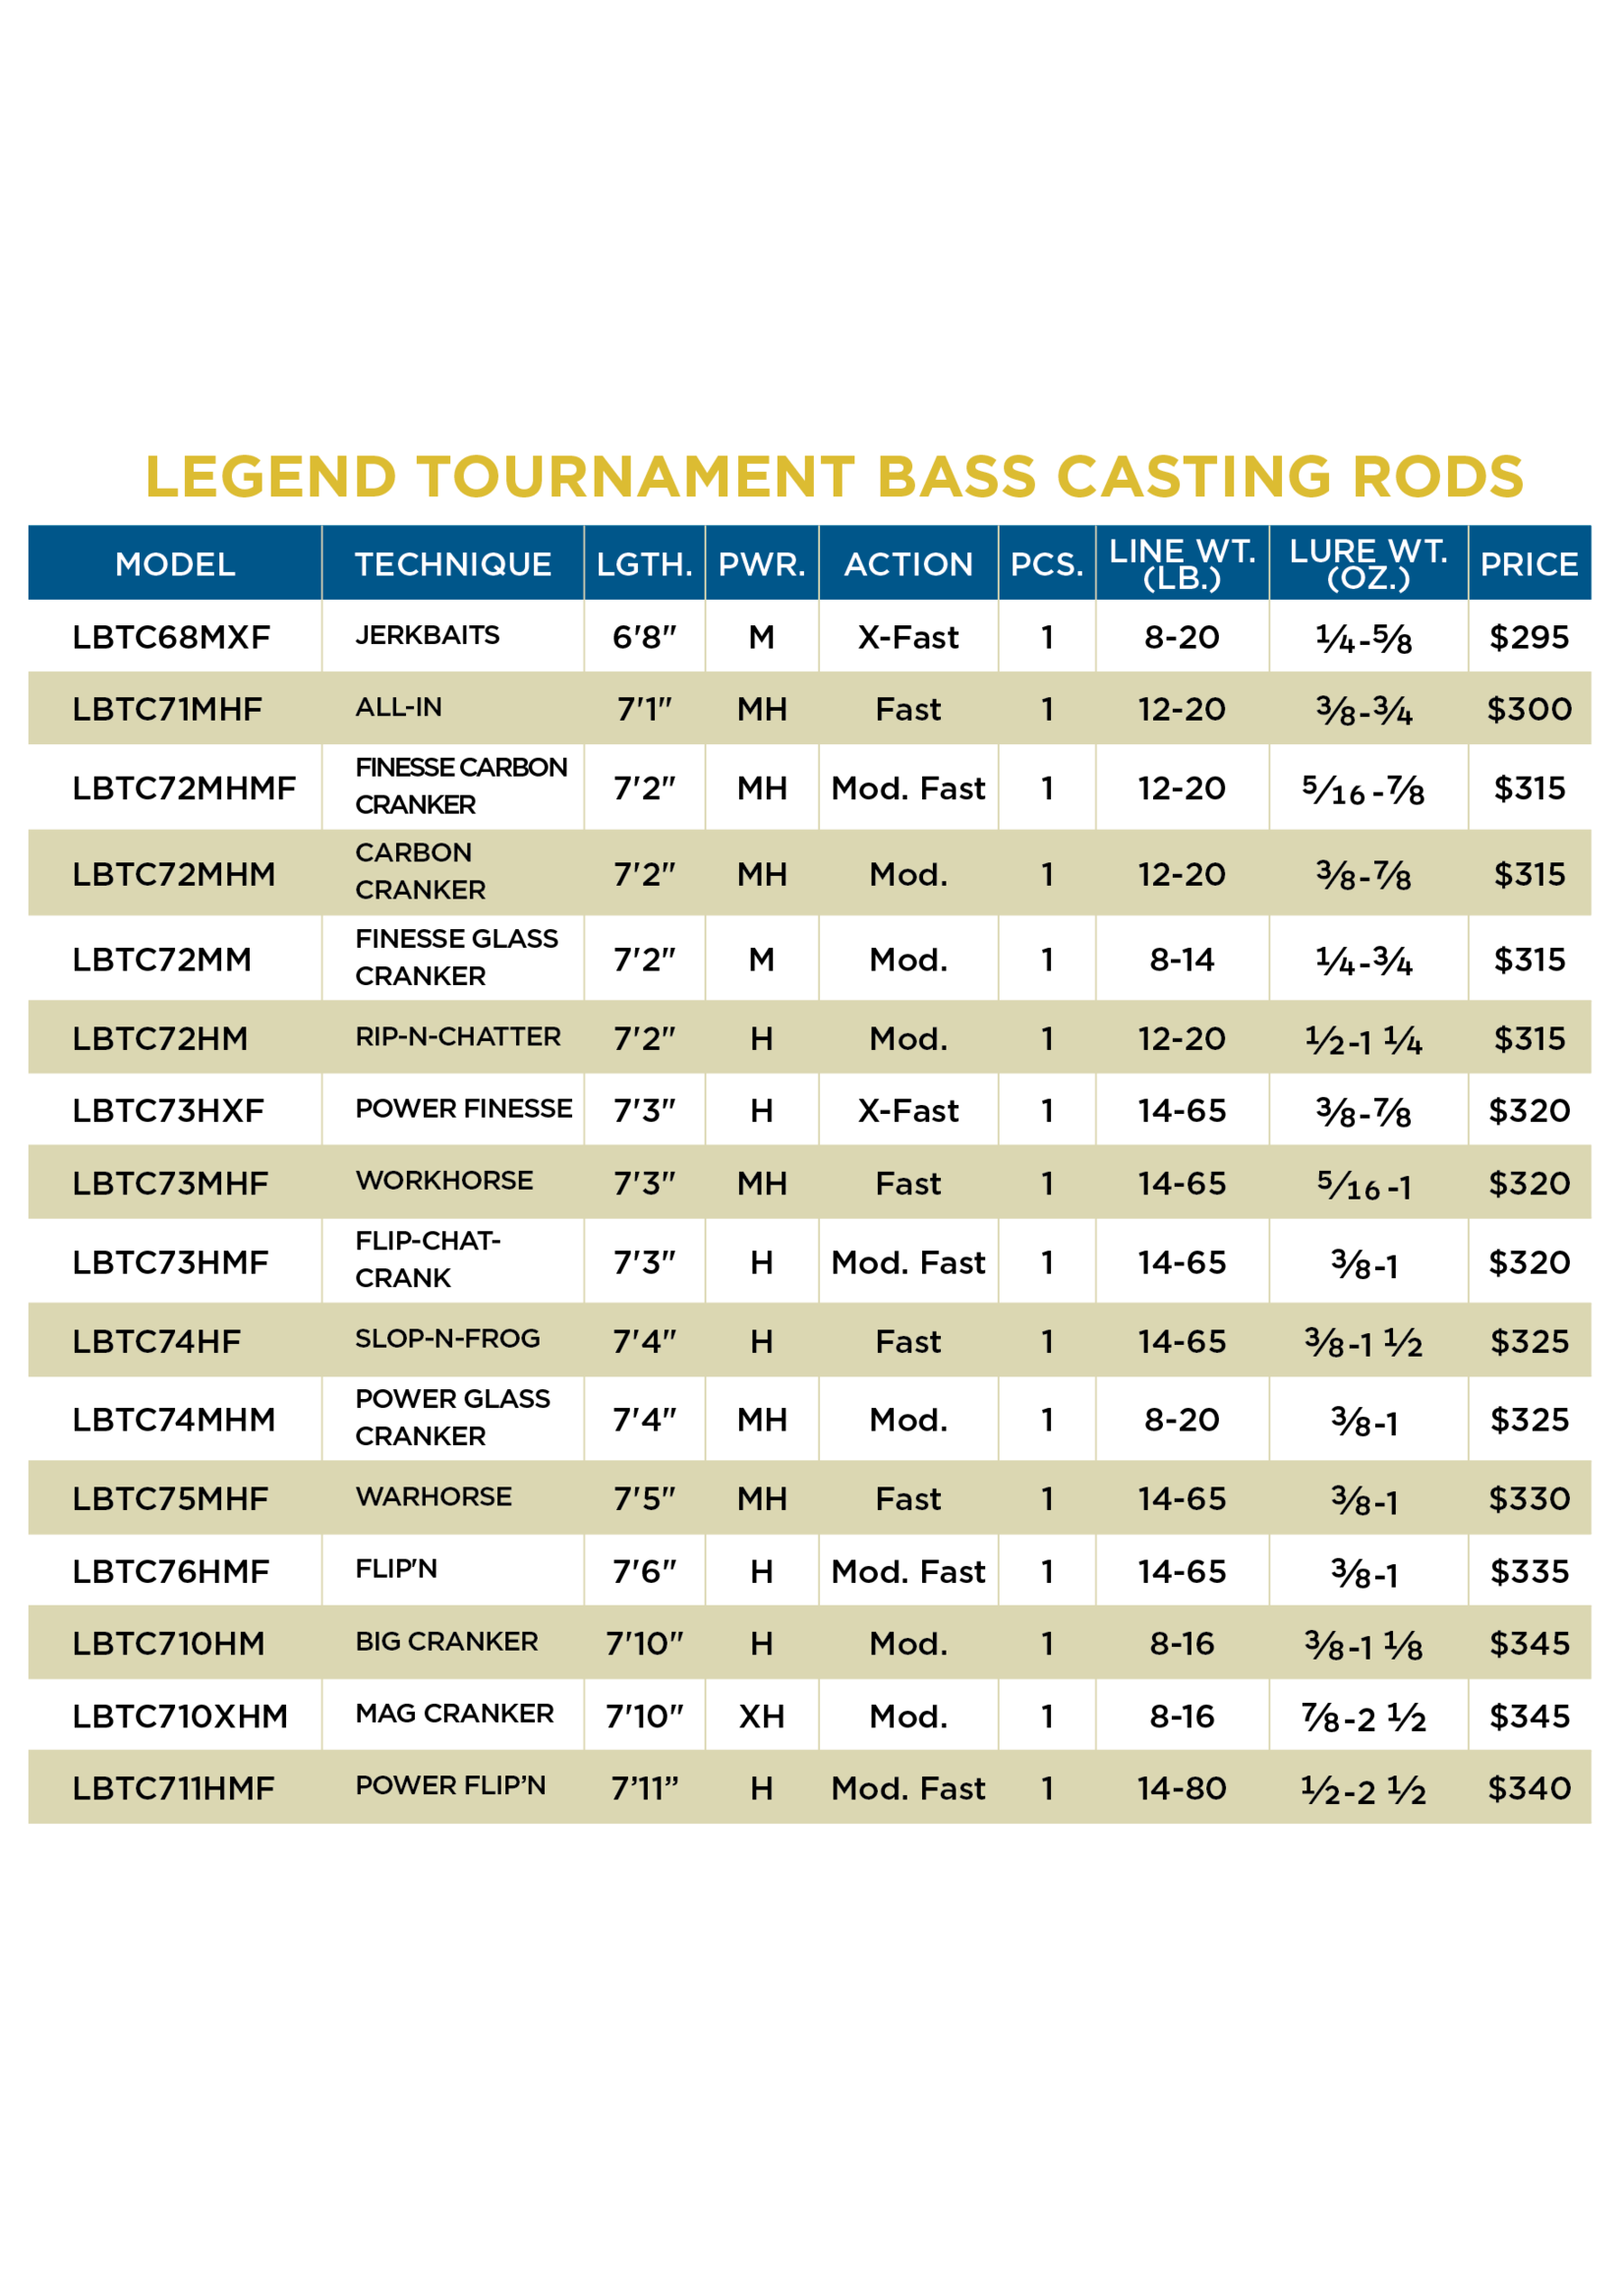 St. Croix Legend Tournament Bass Casting Rod